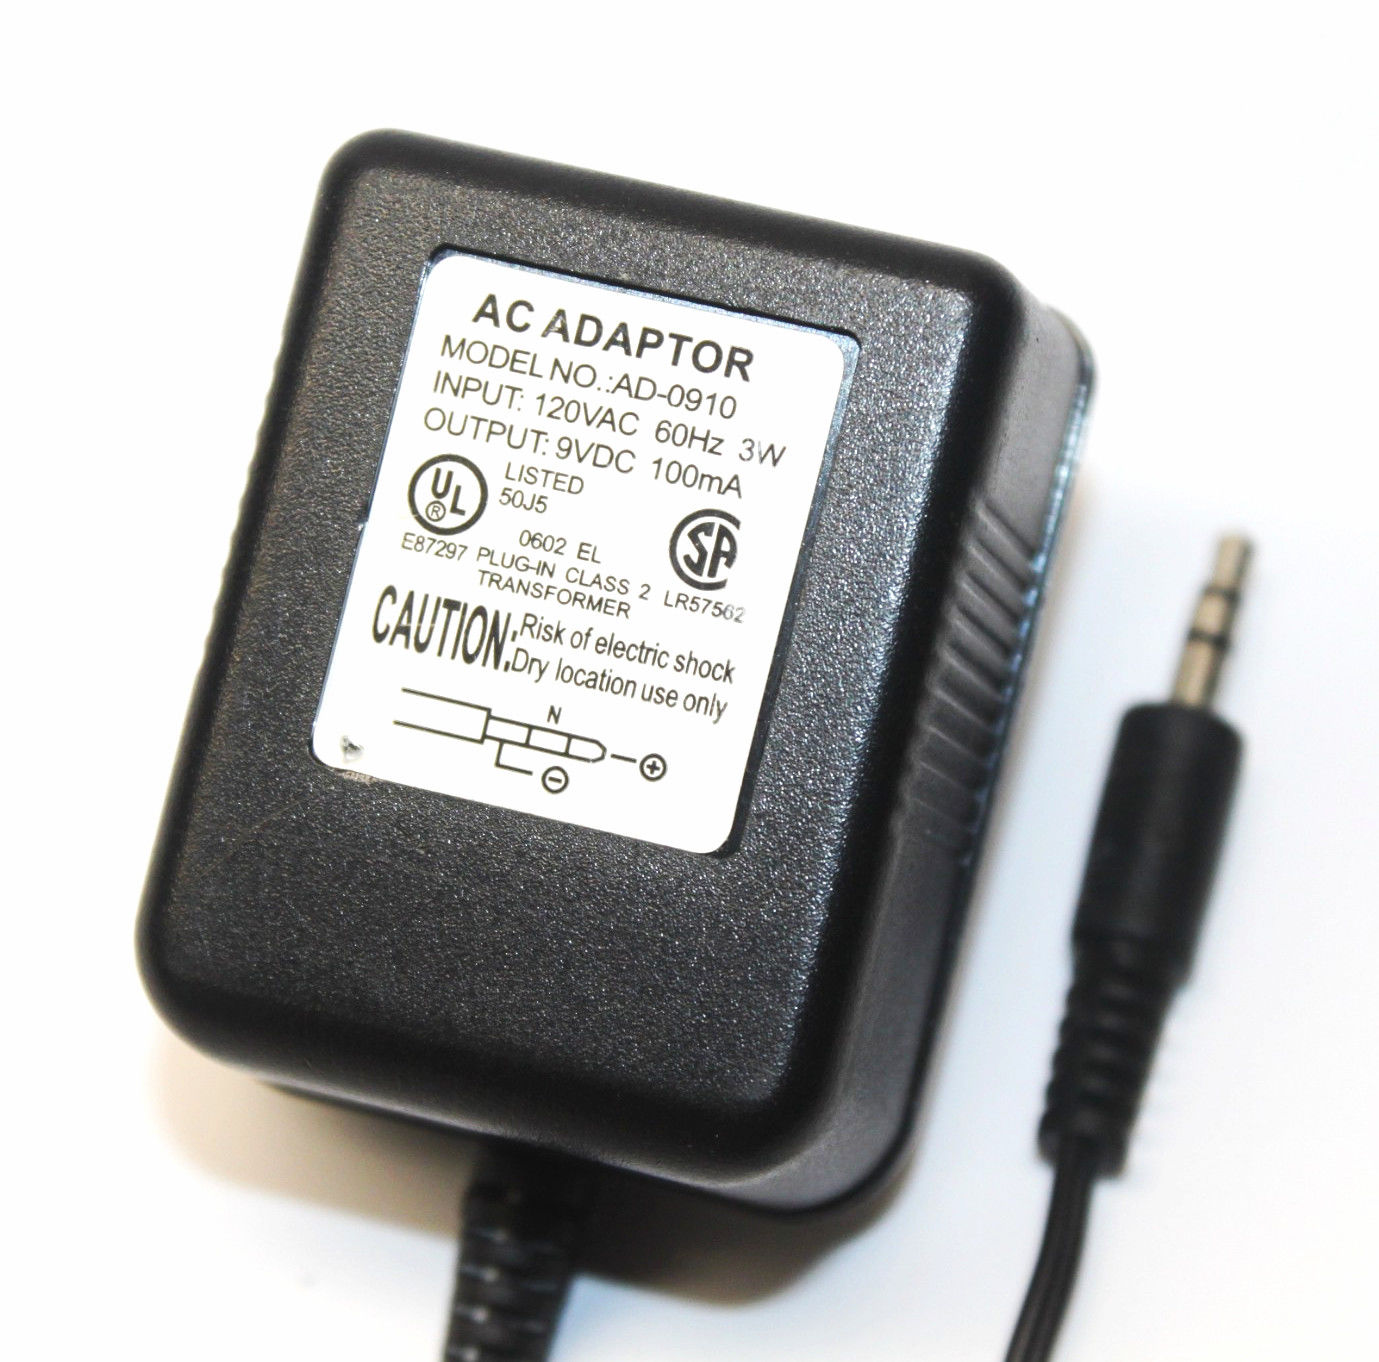 Genuine OEM AC Adaptor AD-0910 9V 100mA Plug-In Class 2 Transformer Power Supply